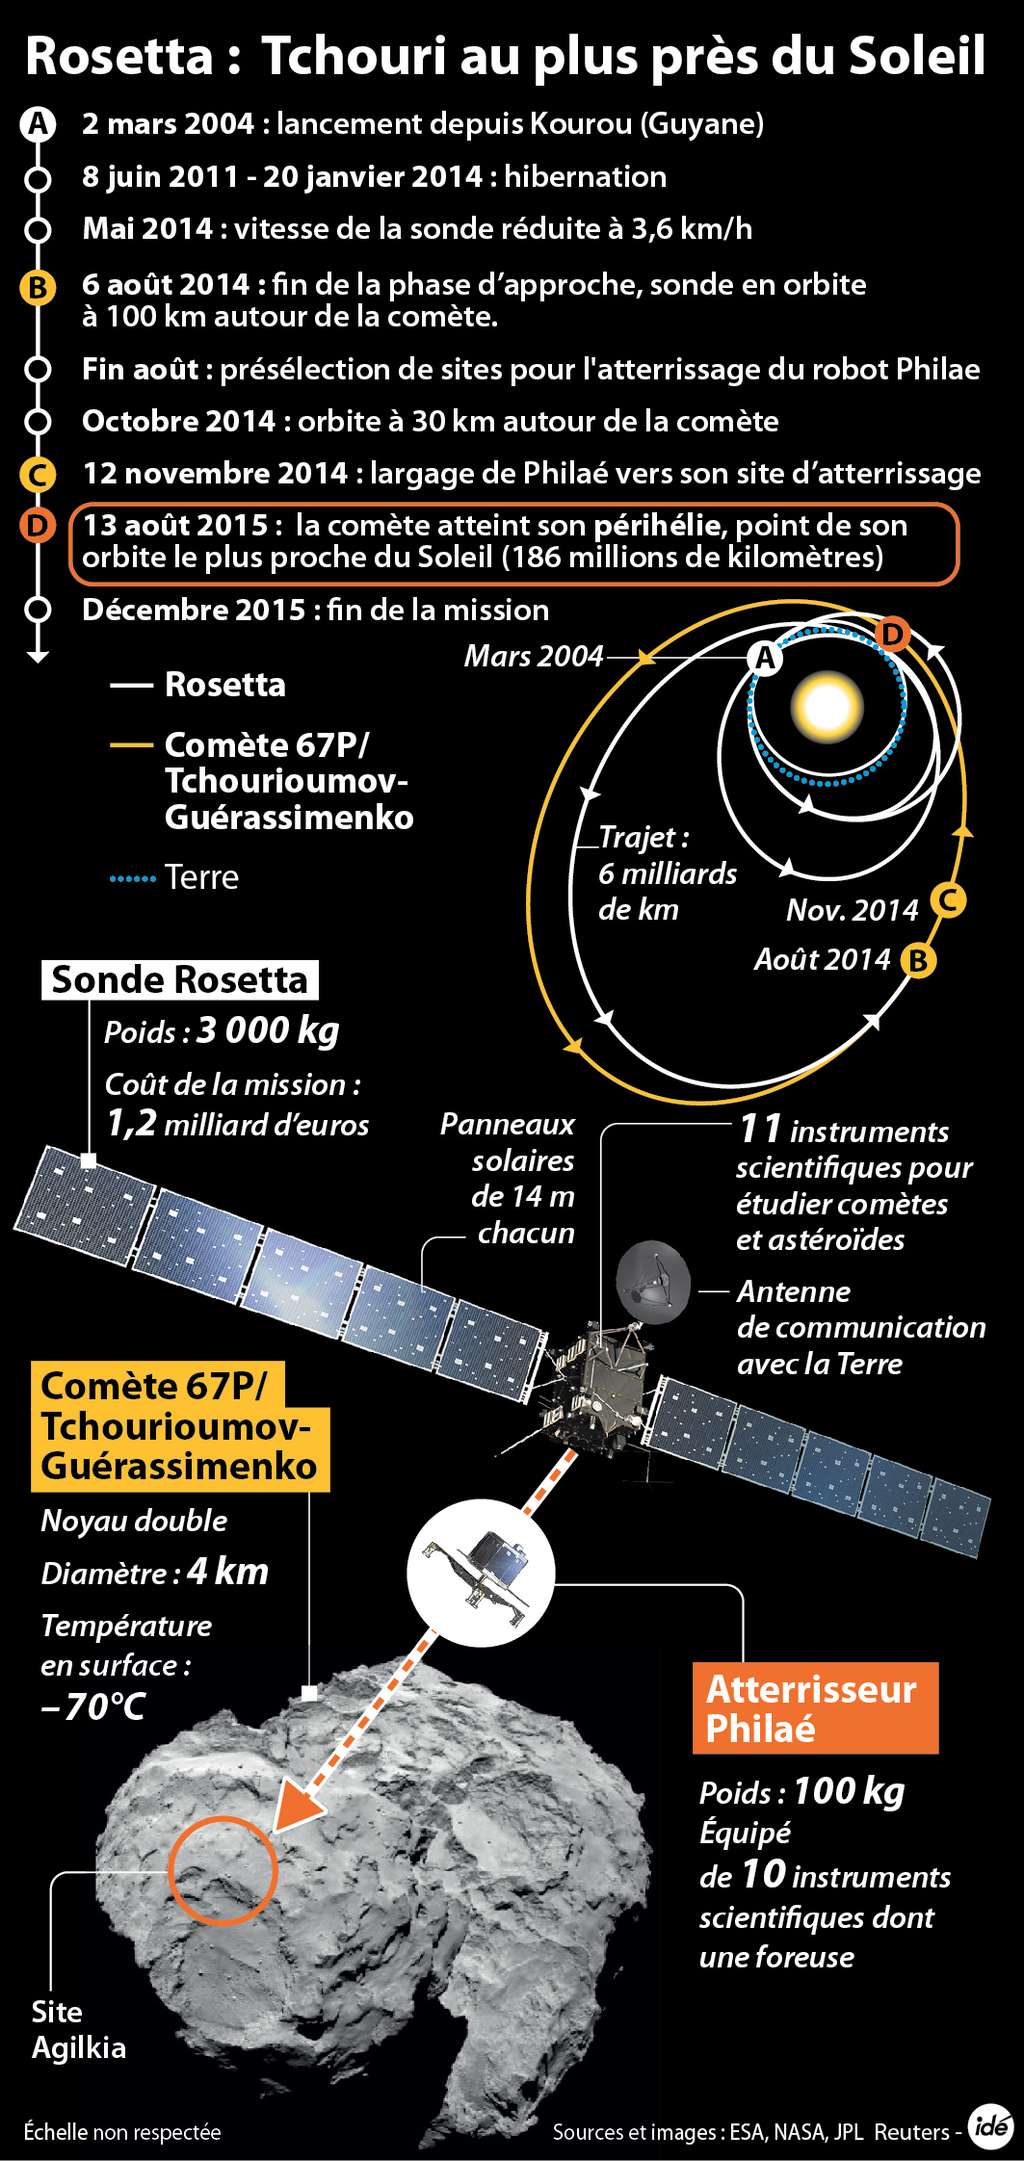 La sonde Rosetta tourne depuis le 6 août 2014 autour de la comète 67P/Churyumov-Gerasimenko (selon l'orthographe anglophone). Elle n'est pas en orbite stable autour de ce corps léger, la gravité au sol y étant de un cent-millième de la gravité terrestre. © Idé